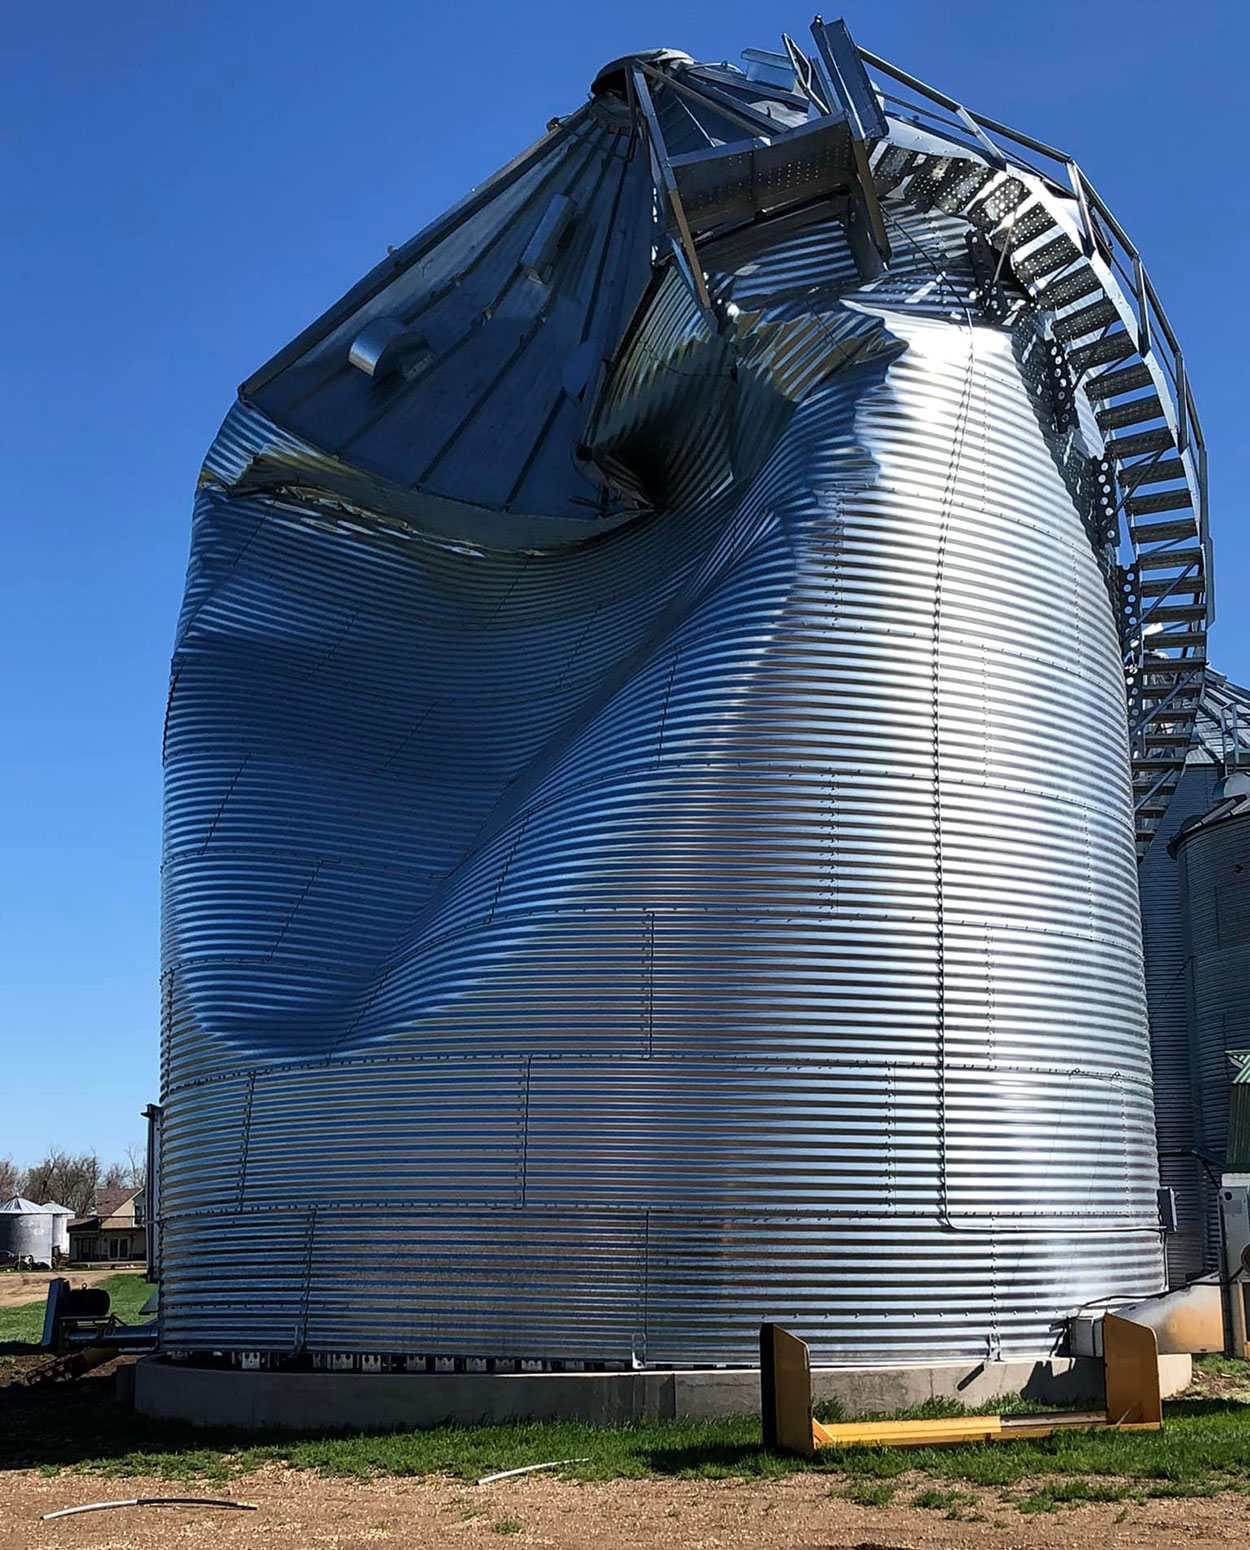 Storm-damaged grain bin.